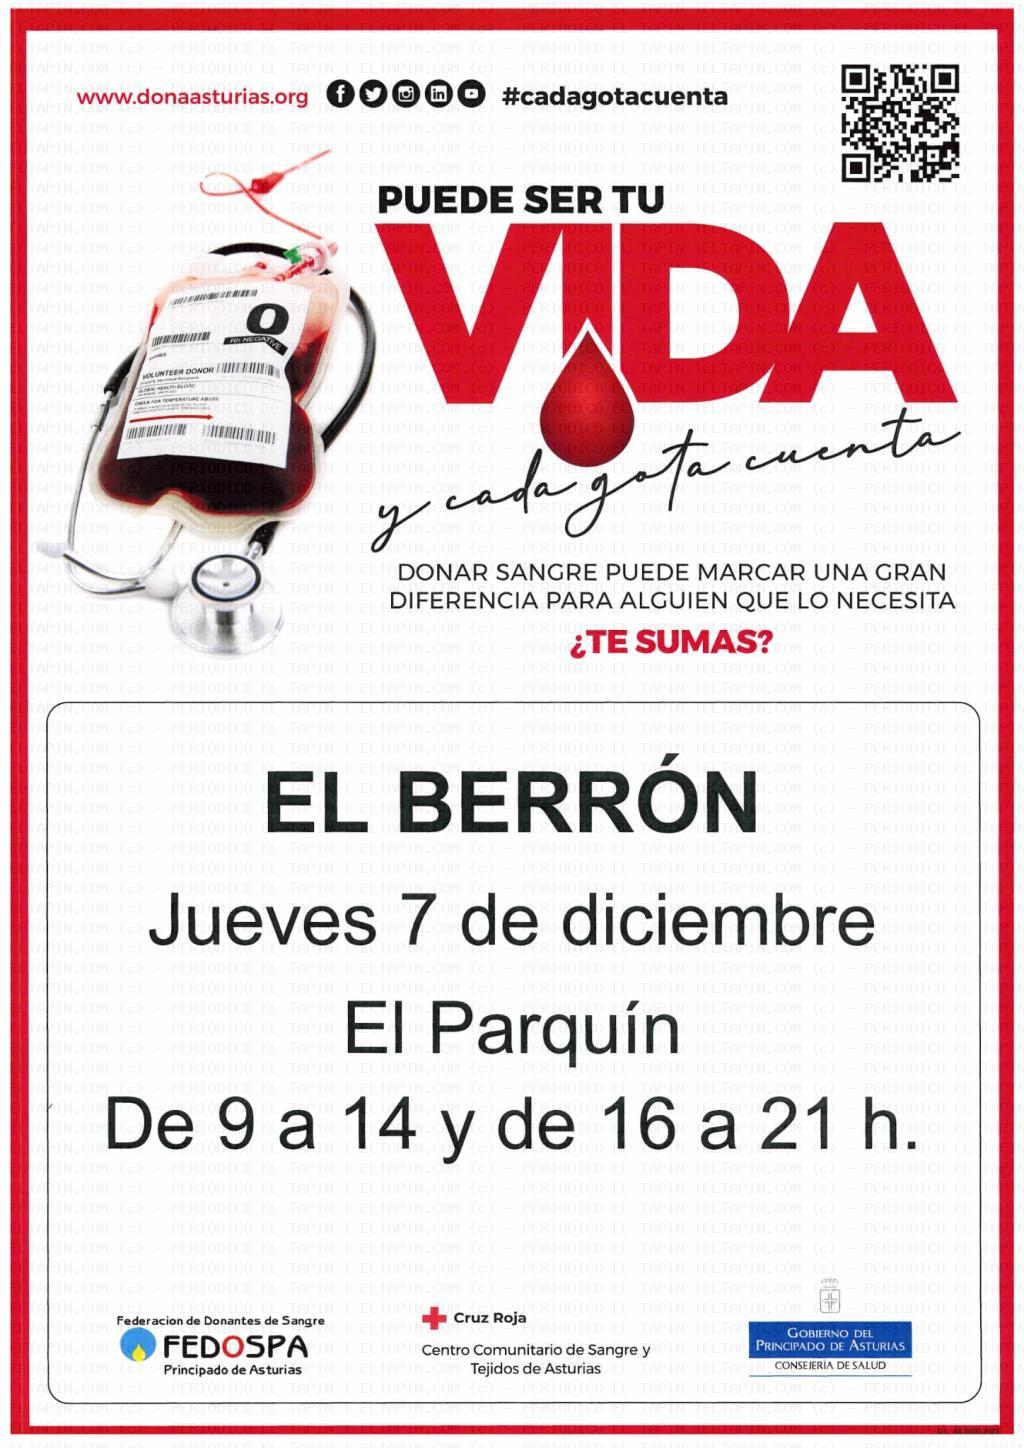 El Tapin - El autobús para donar sangre se encontrará en El Berrón el jueves 7 de diciembre